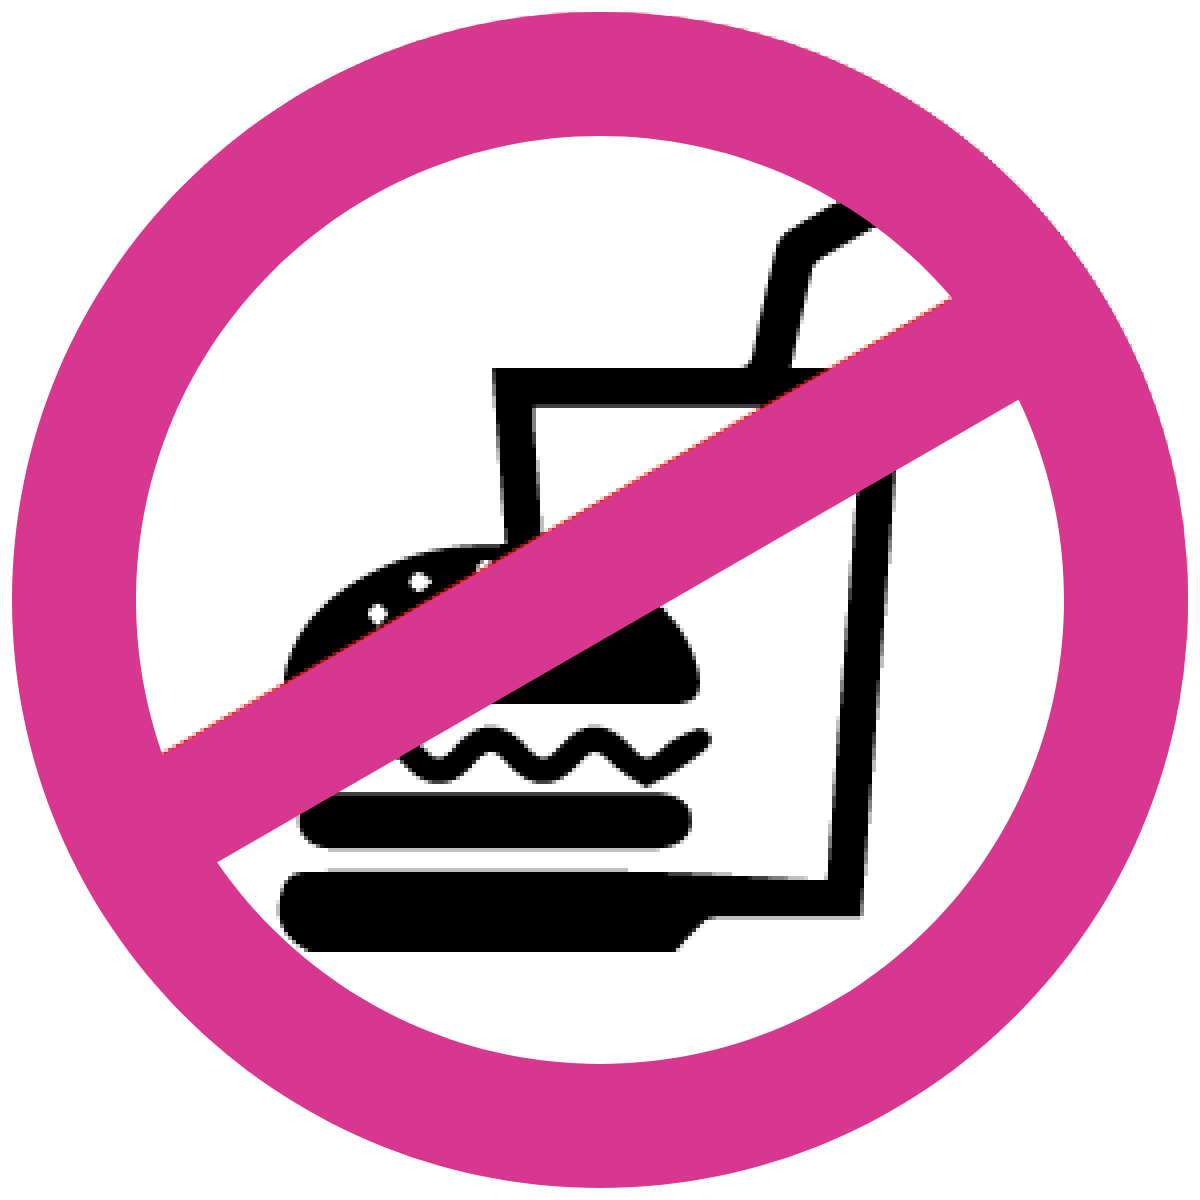 飲食物の持込、持出し 禁止。